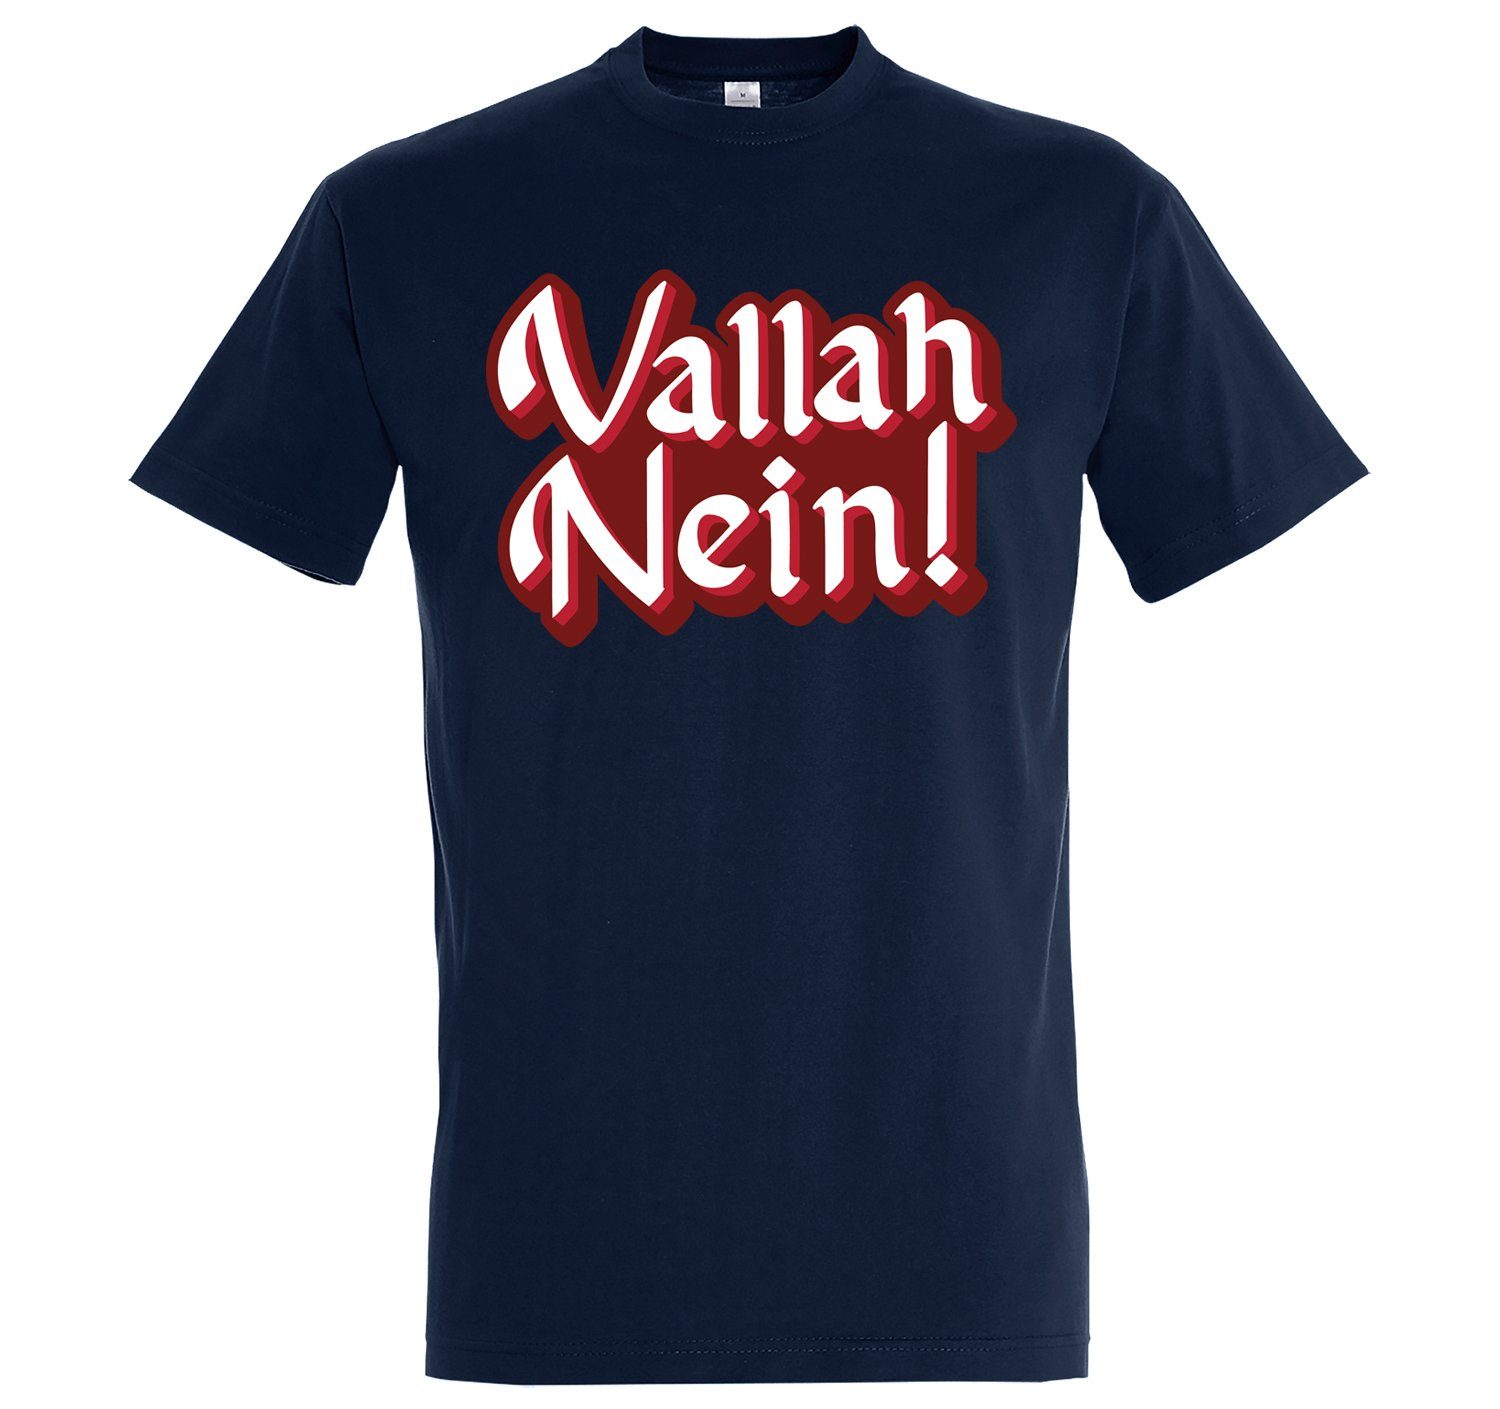 Youth Designz Nein" "Vallah Herren T-Shirt Navyblau lustigem Spruch mit T-Shirt